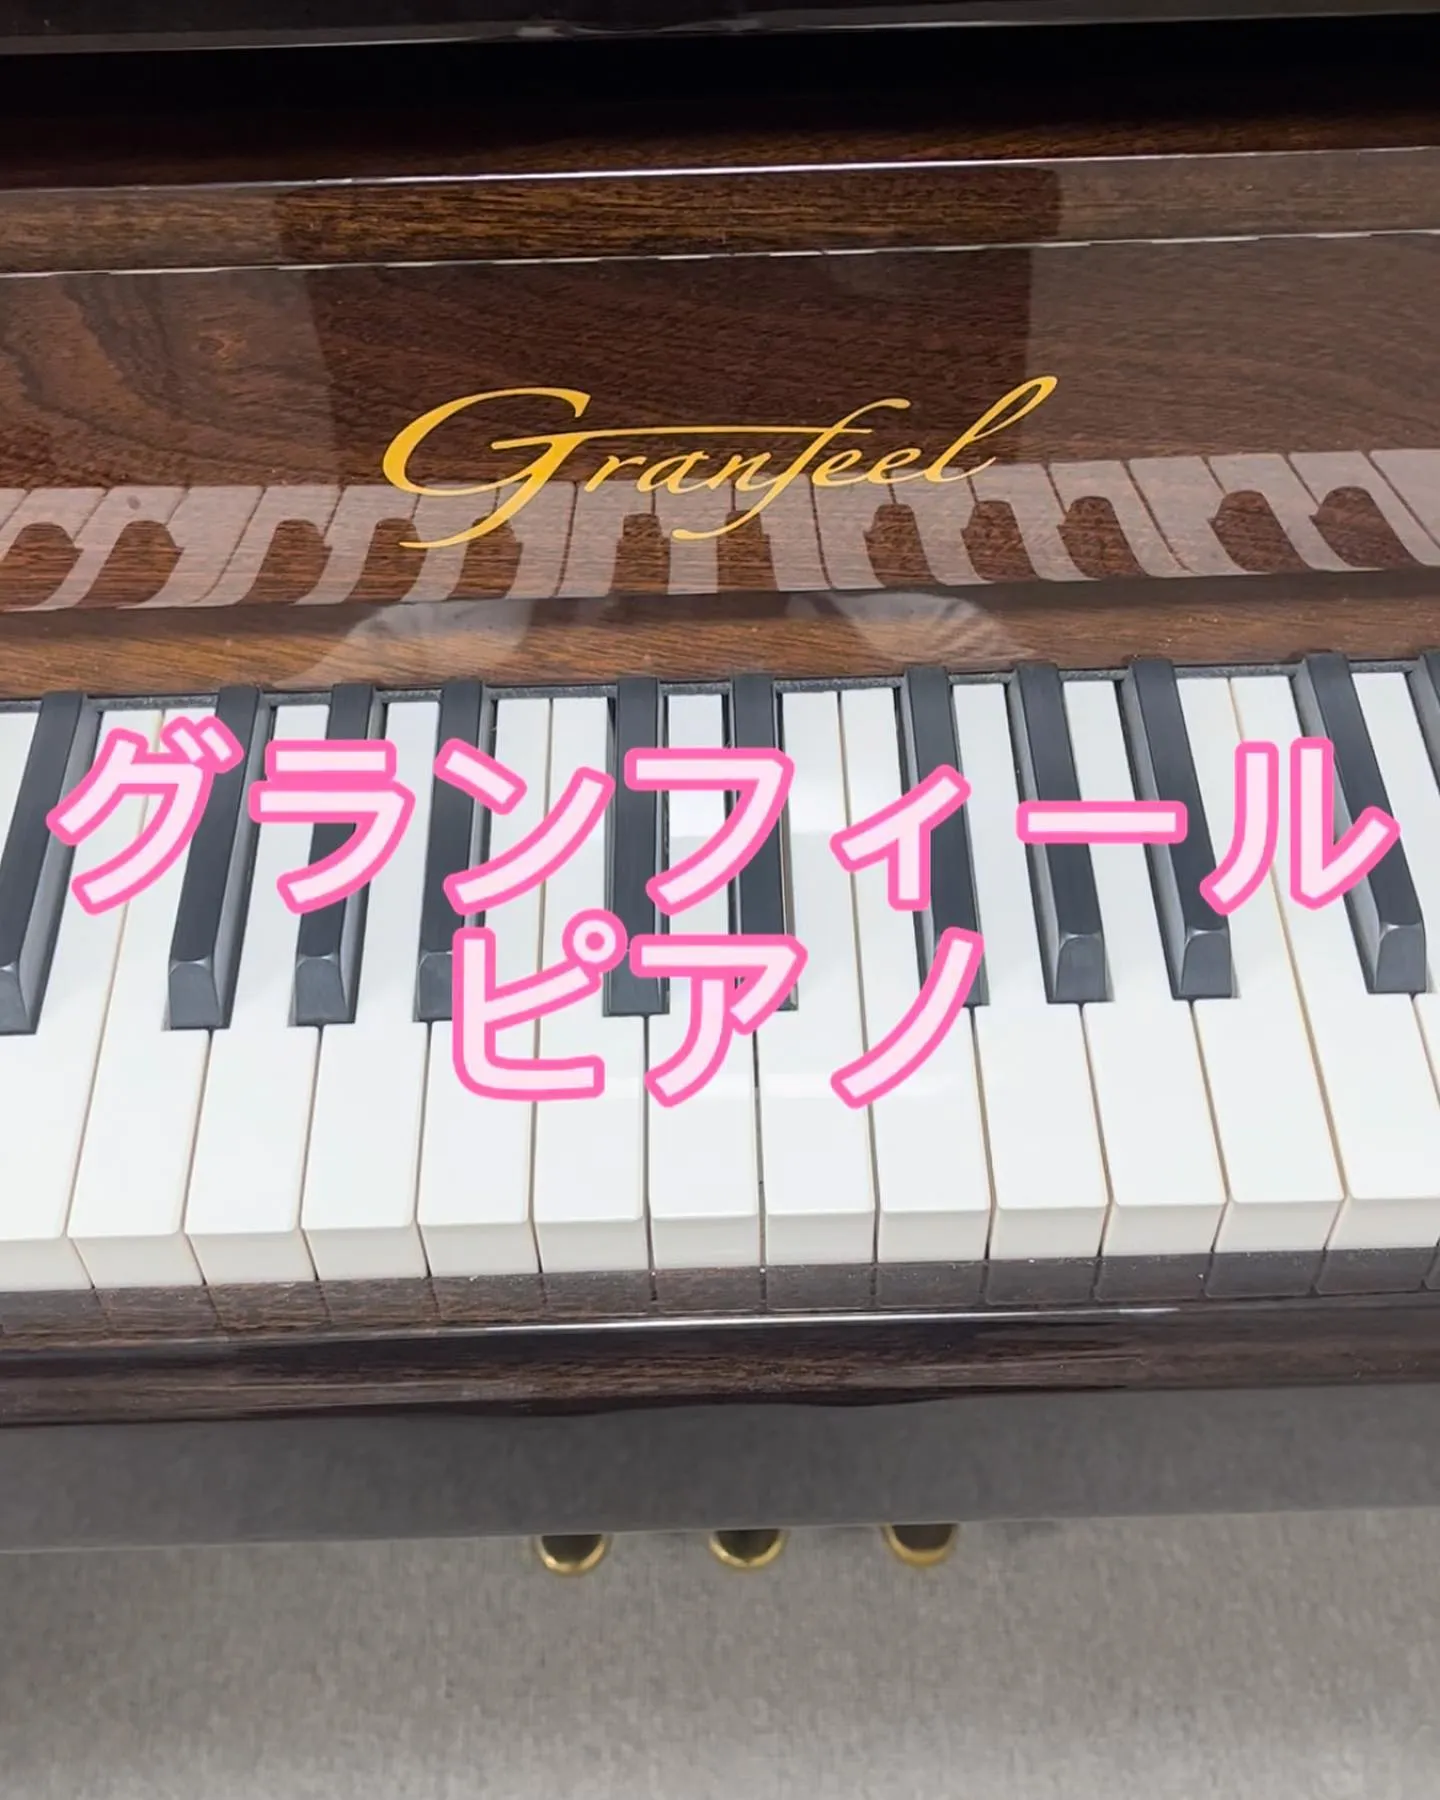 グランフィールピアノ調律